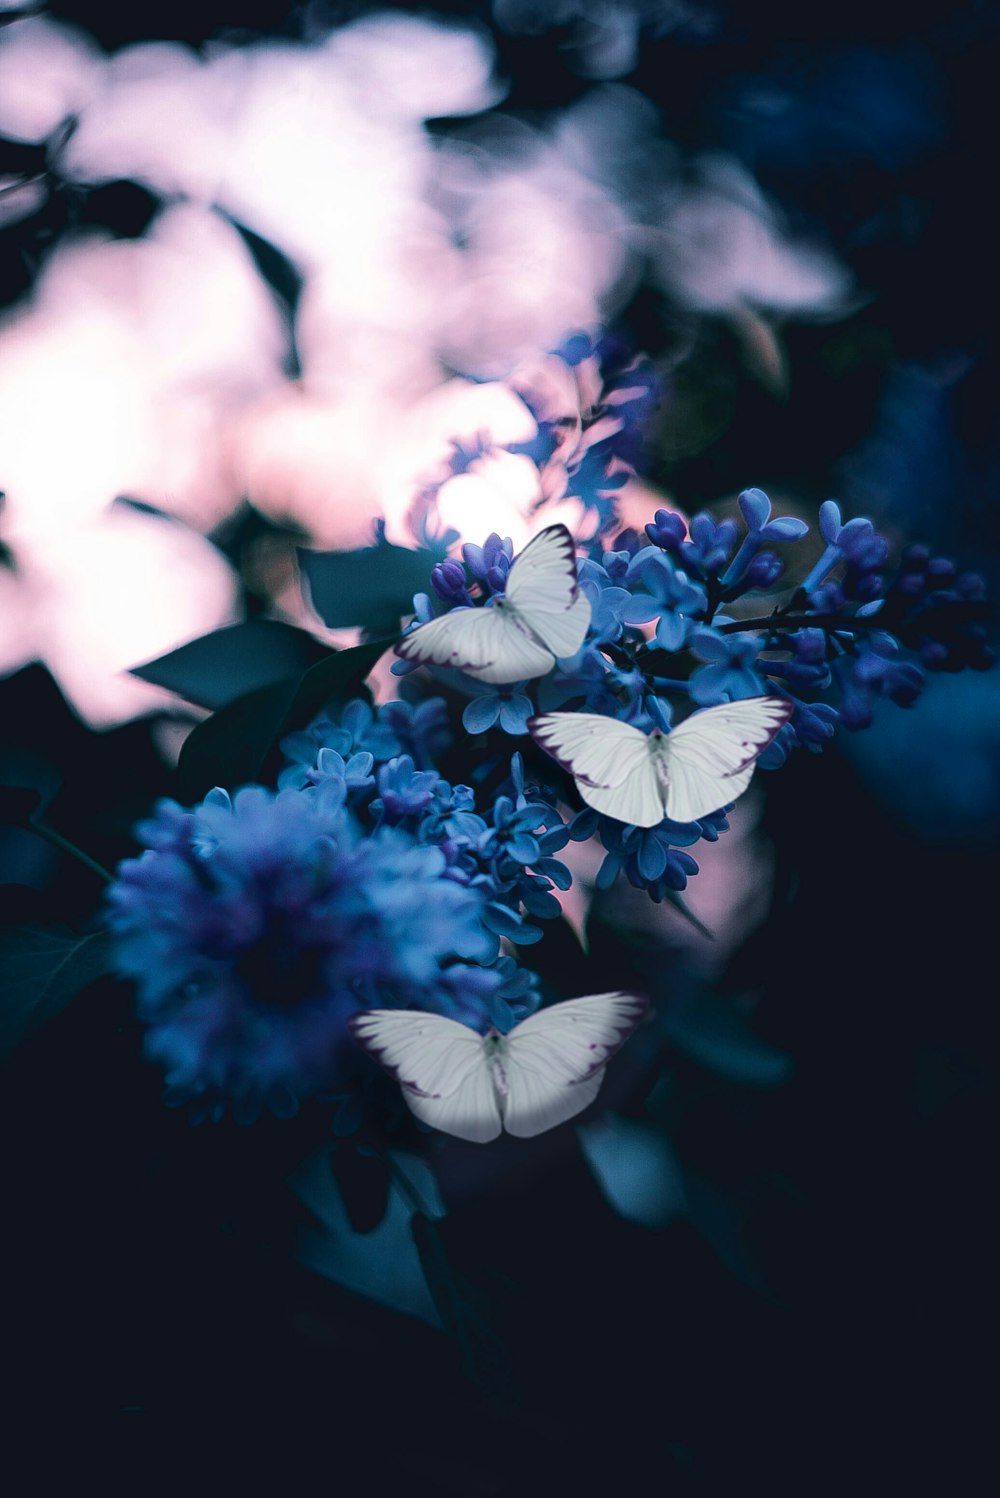 보라색 꽃잎이 달린 꽃에 수분 하는 세 나비의 사진